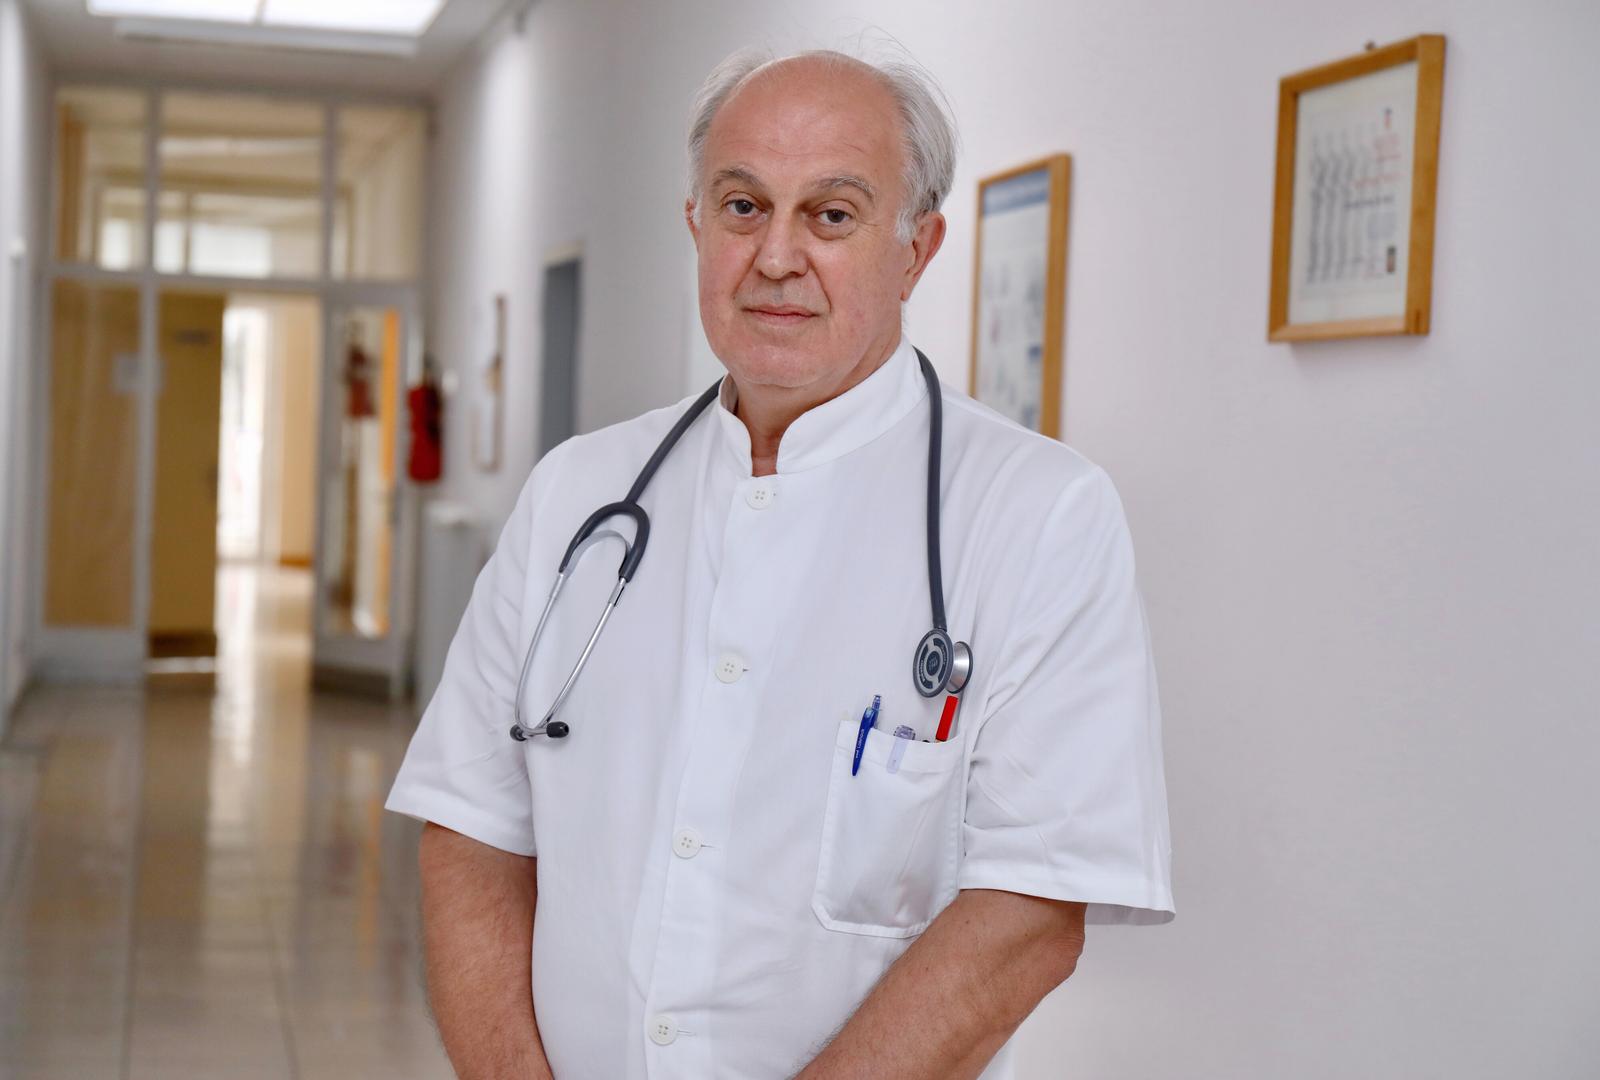 09.08.2021.,Split- Dr. Ivo Ivic ravnatelj klinike za inektologiju splitskg KBC-a"nPhoto:Ivo Cagalj/PIXSELL